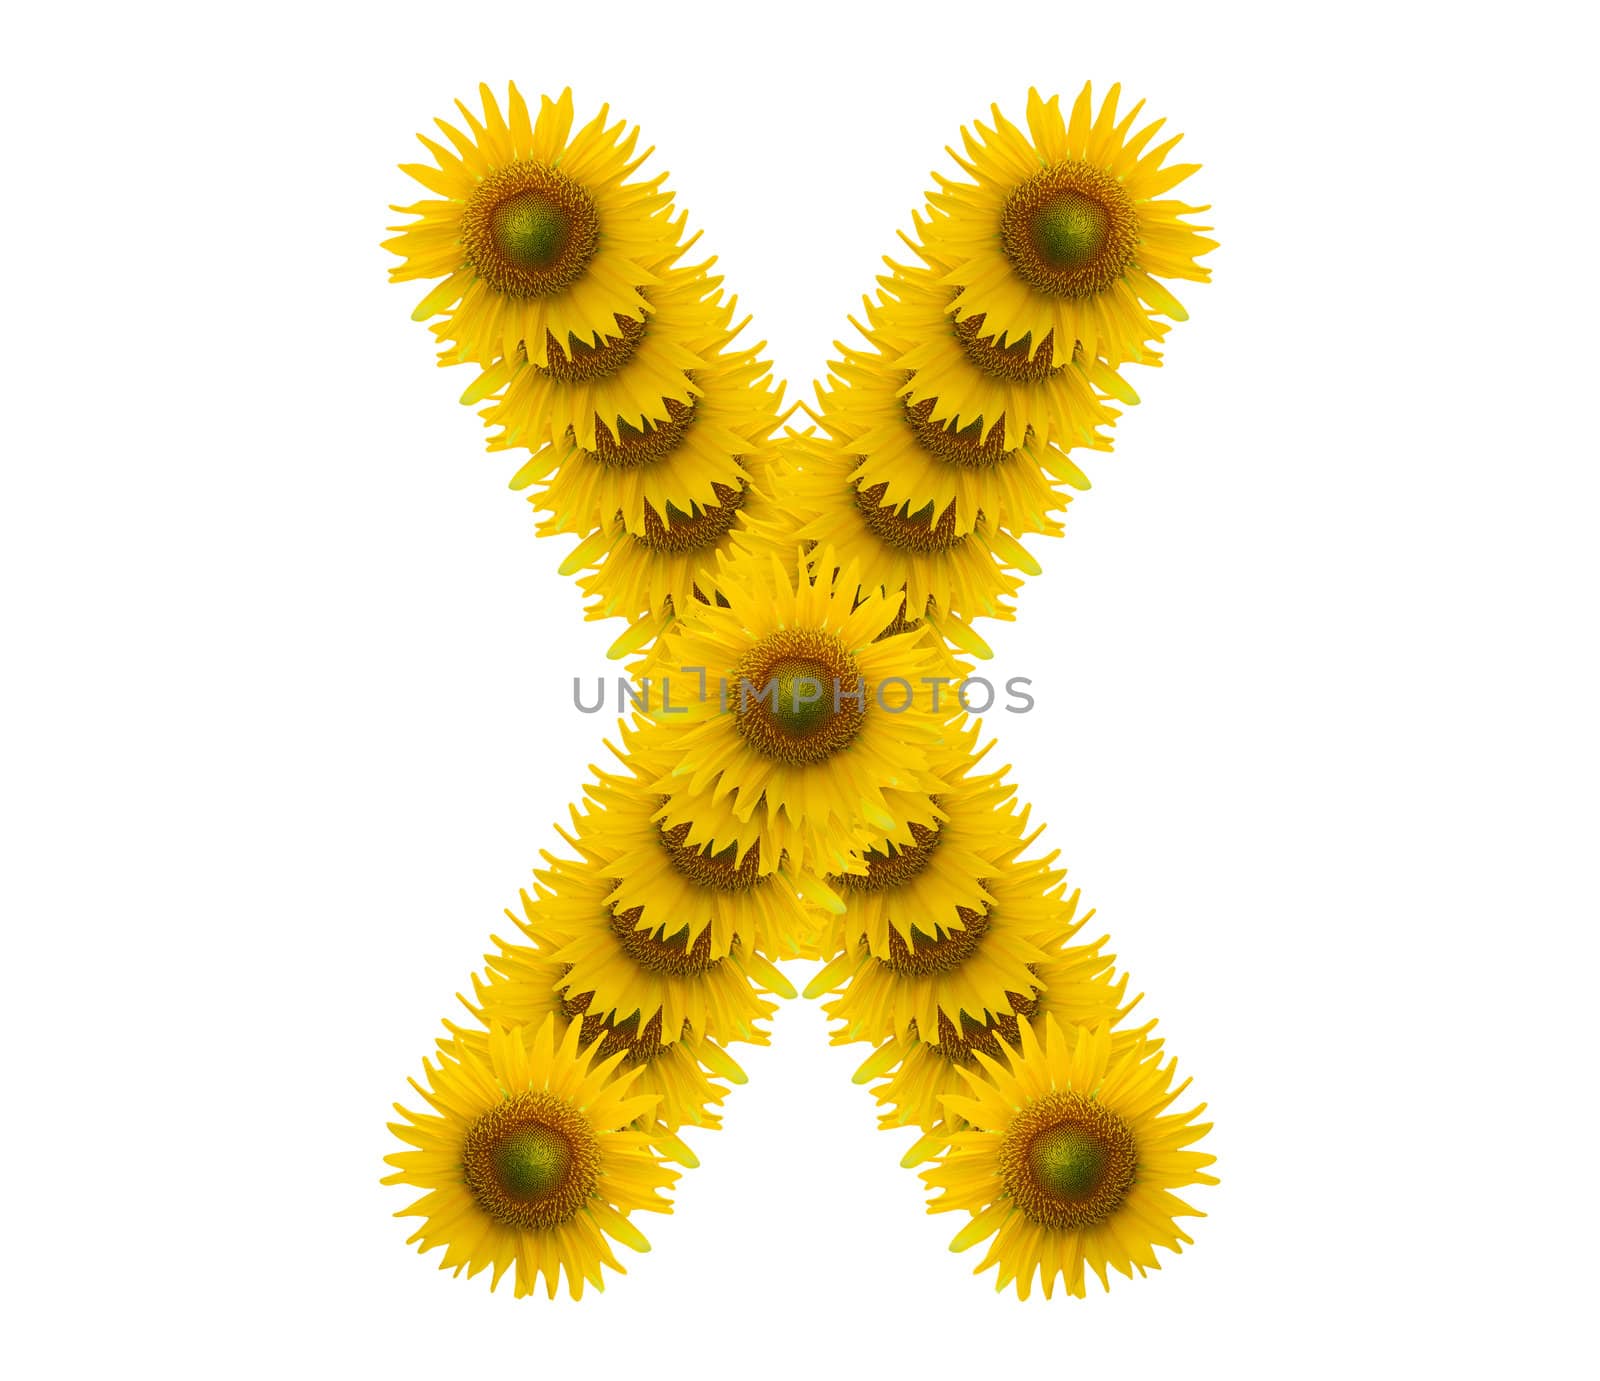 alphabet X, sunflower isolated on white background by jakgree